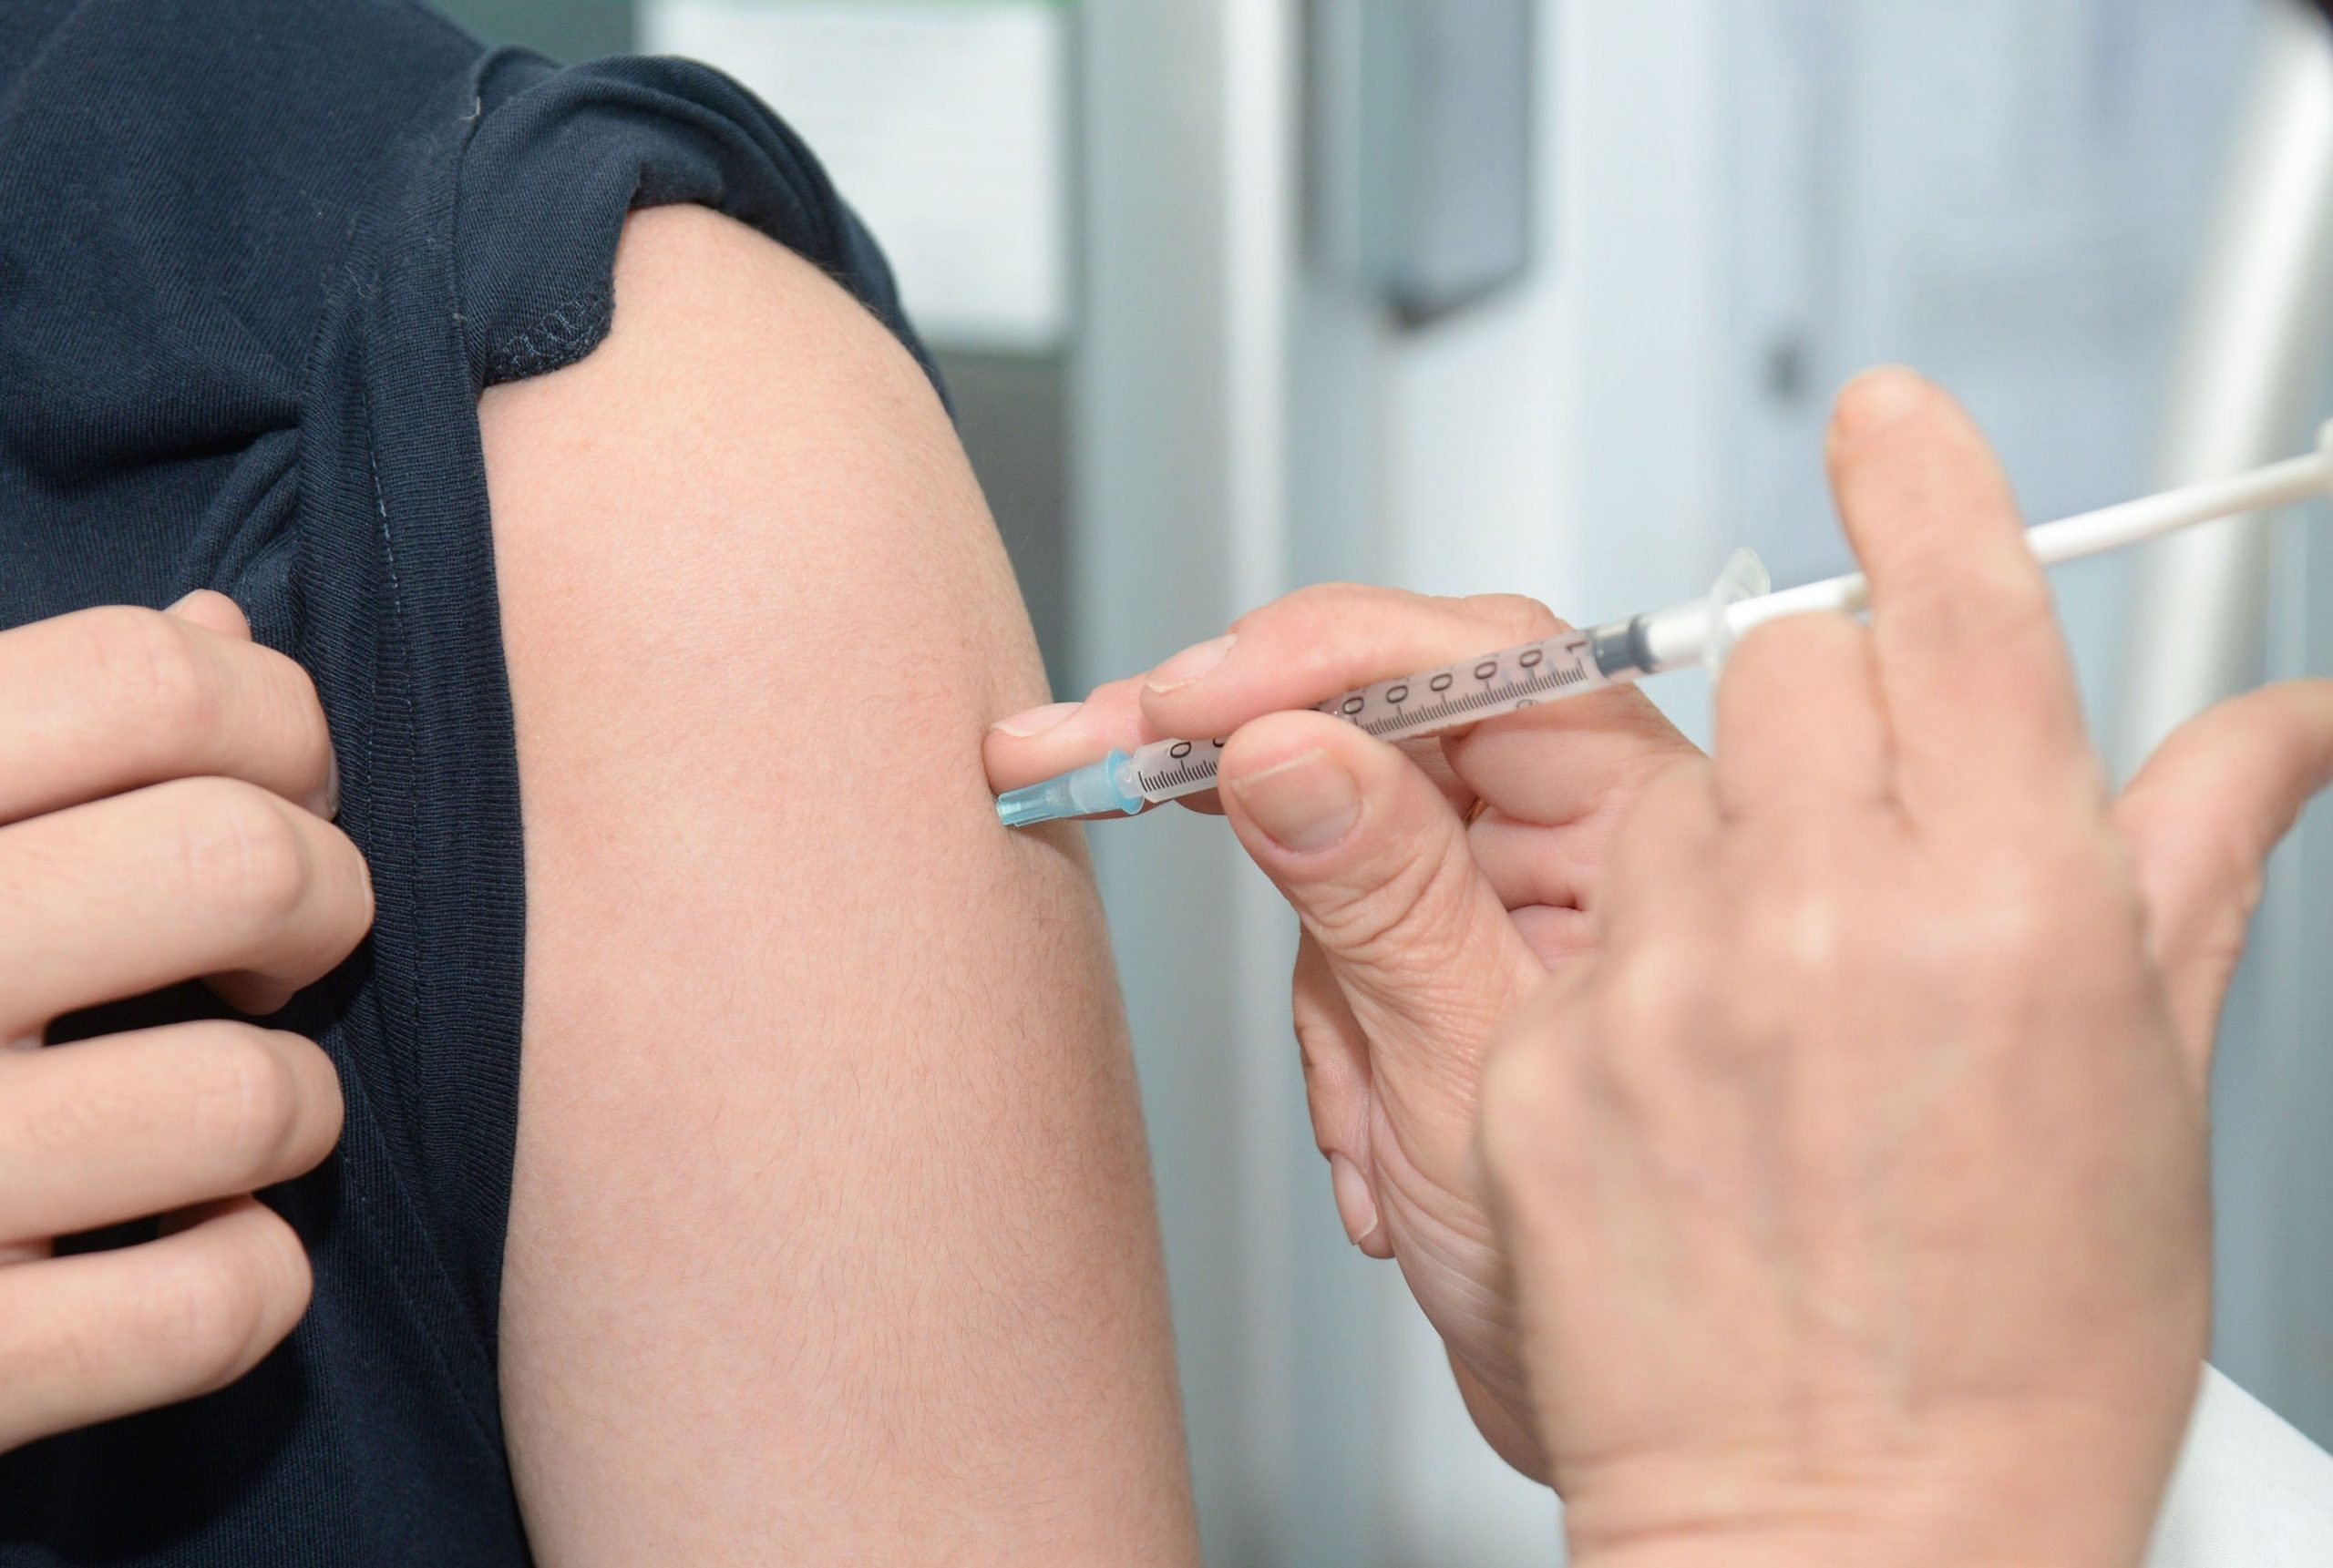 Vaccinazione antinfluenzale, cosa dicono le prove scientifiche